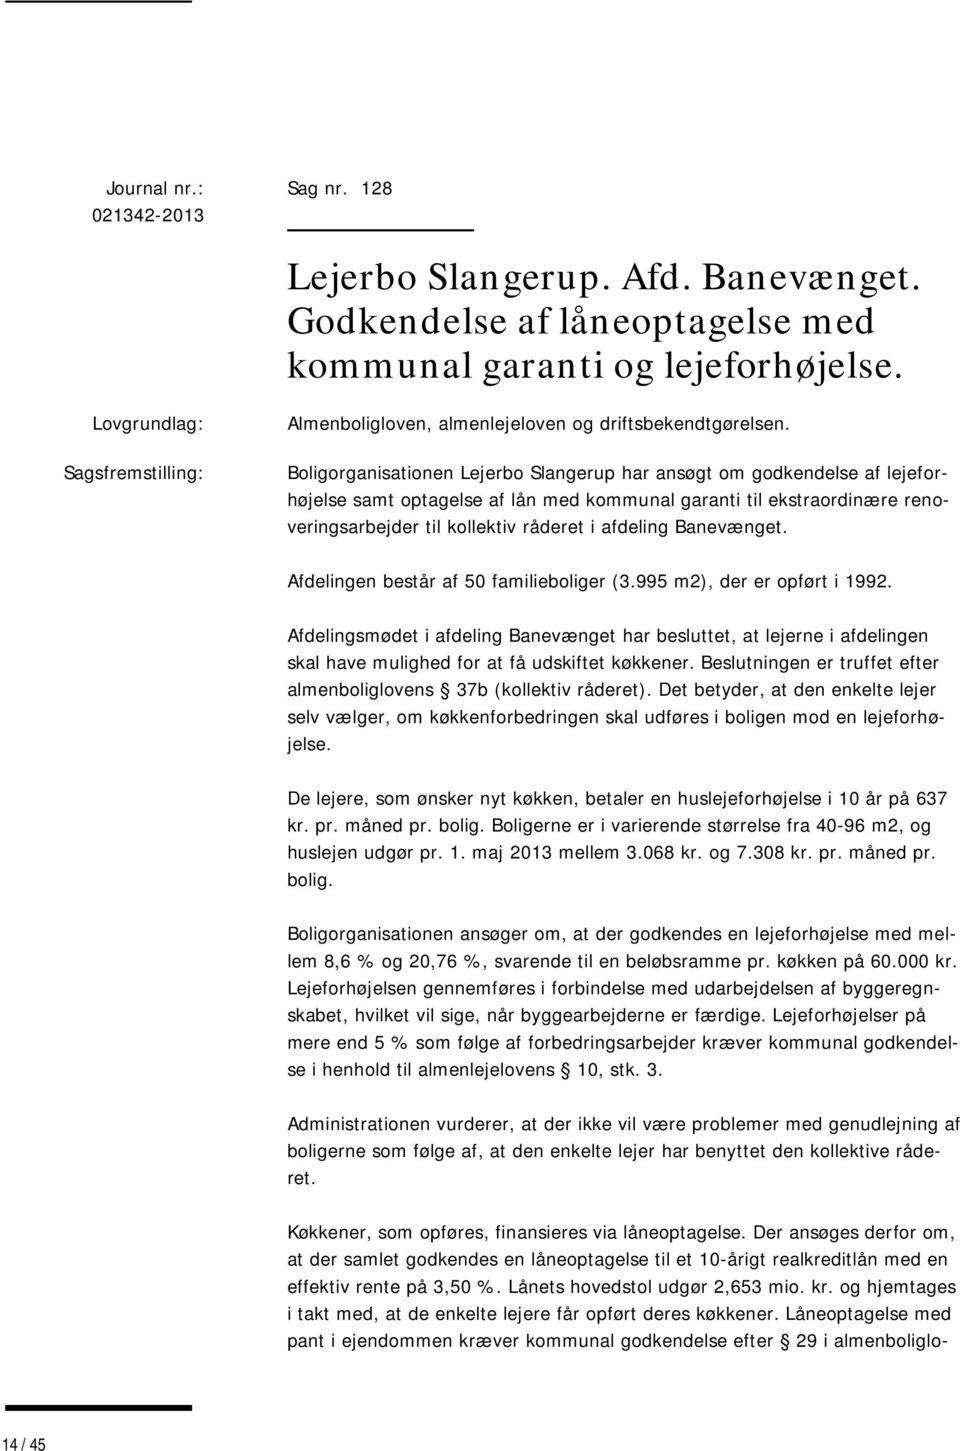 Boligorganisationen Lejerbo Slangerup har ansøgt om godkendelse af lejeforhøjelse samt optagelse af lån med kommunal garanti til ekstraordinære renoveringsarbejder til kollektiv råderet i afdeling